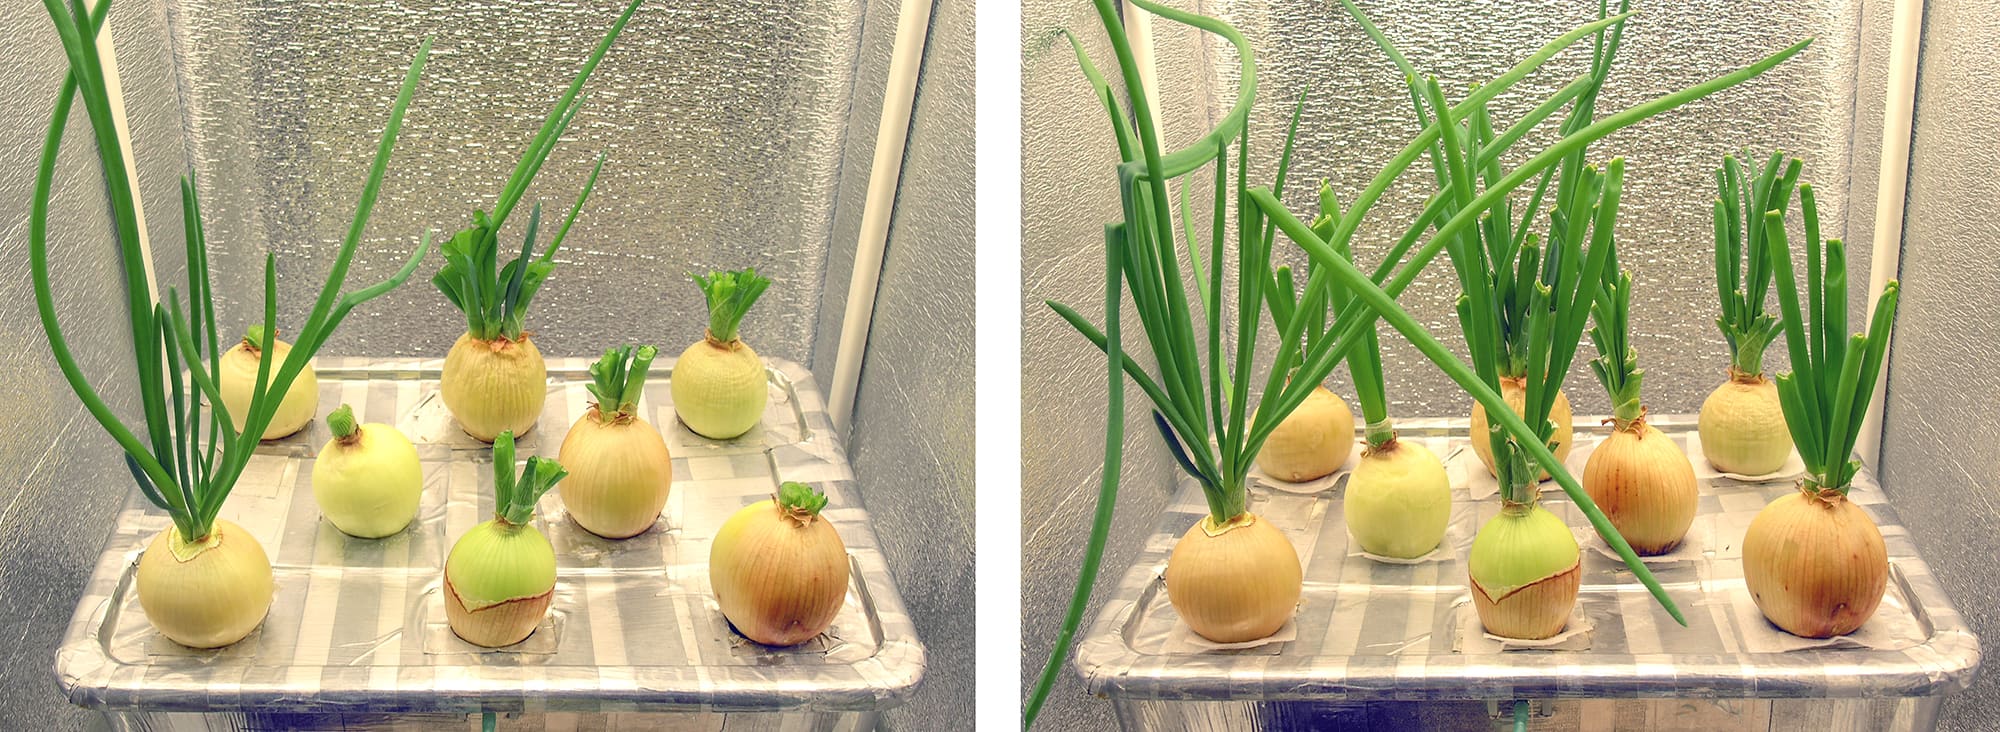 выращивание семян лука на гидропонике